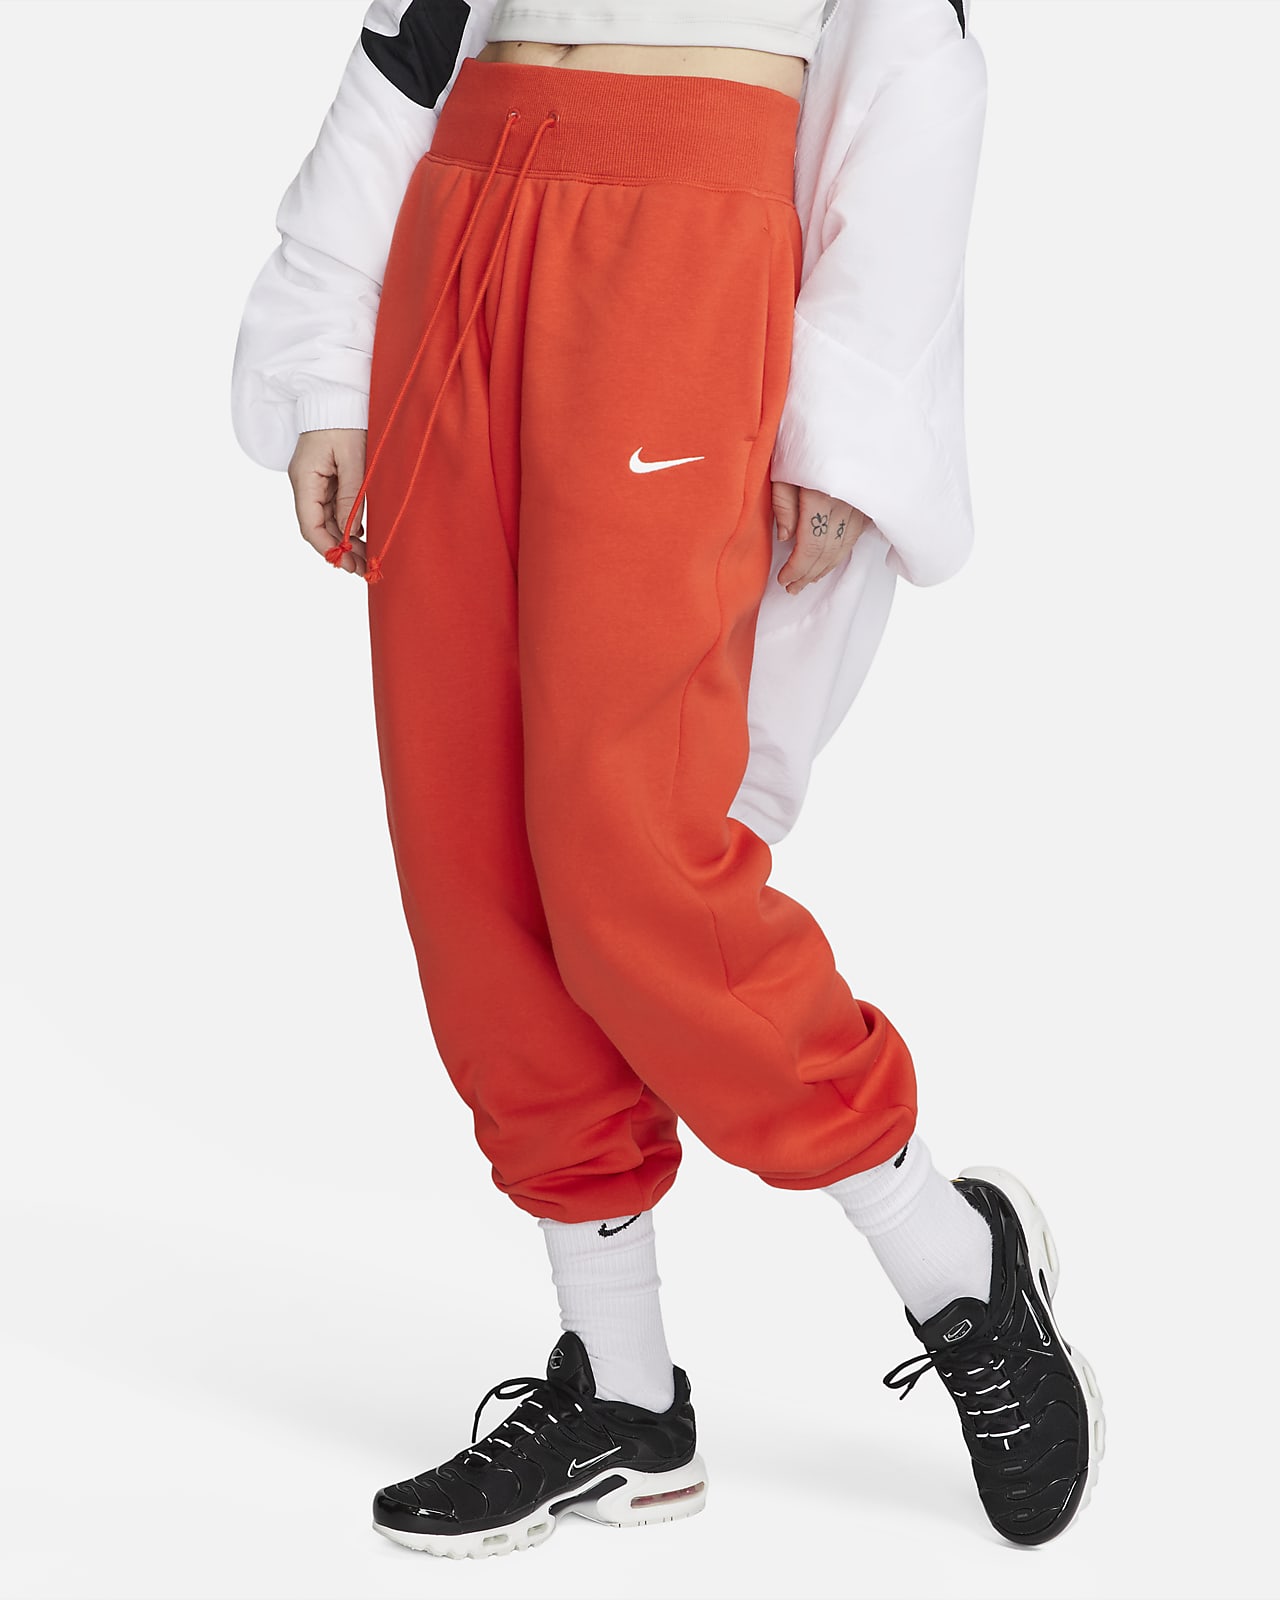 Nike Sportswear Phoenix Fleece Women's High-Waisted Oversized Tracksuit Bottoms